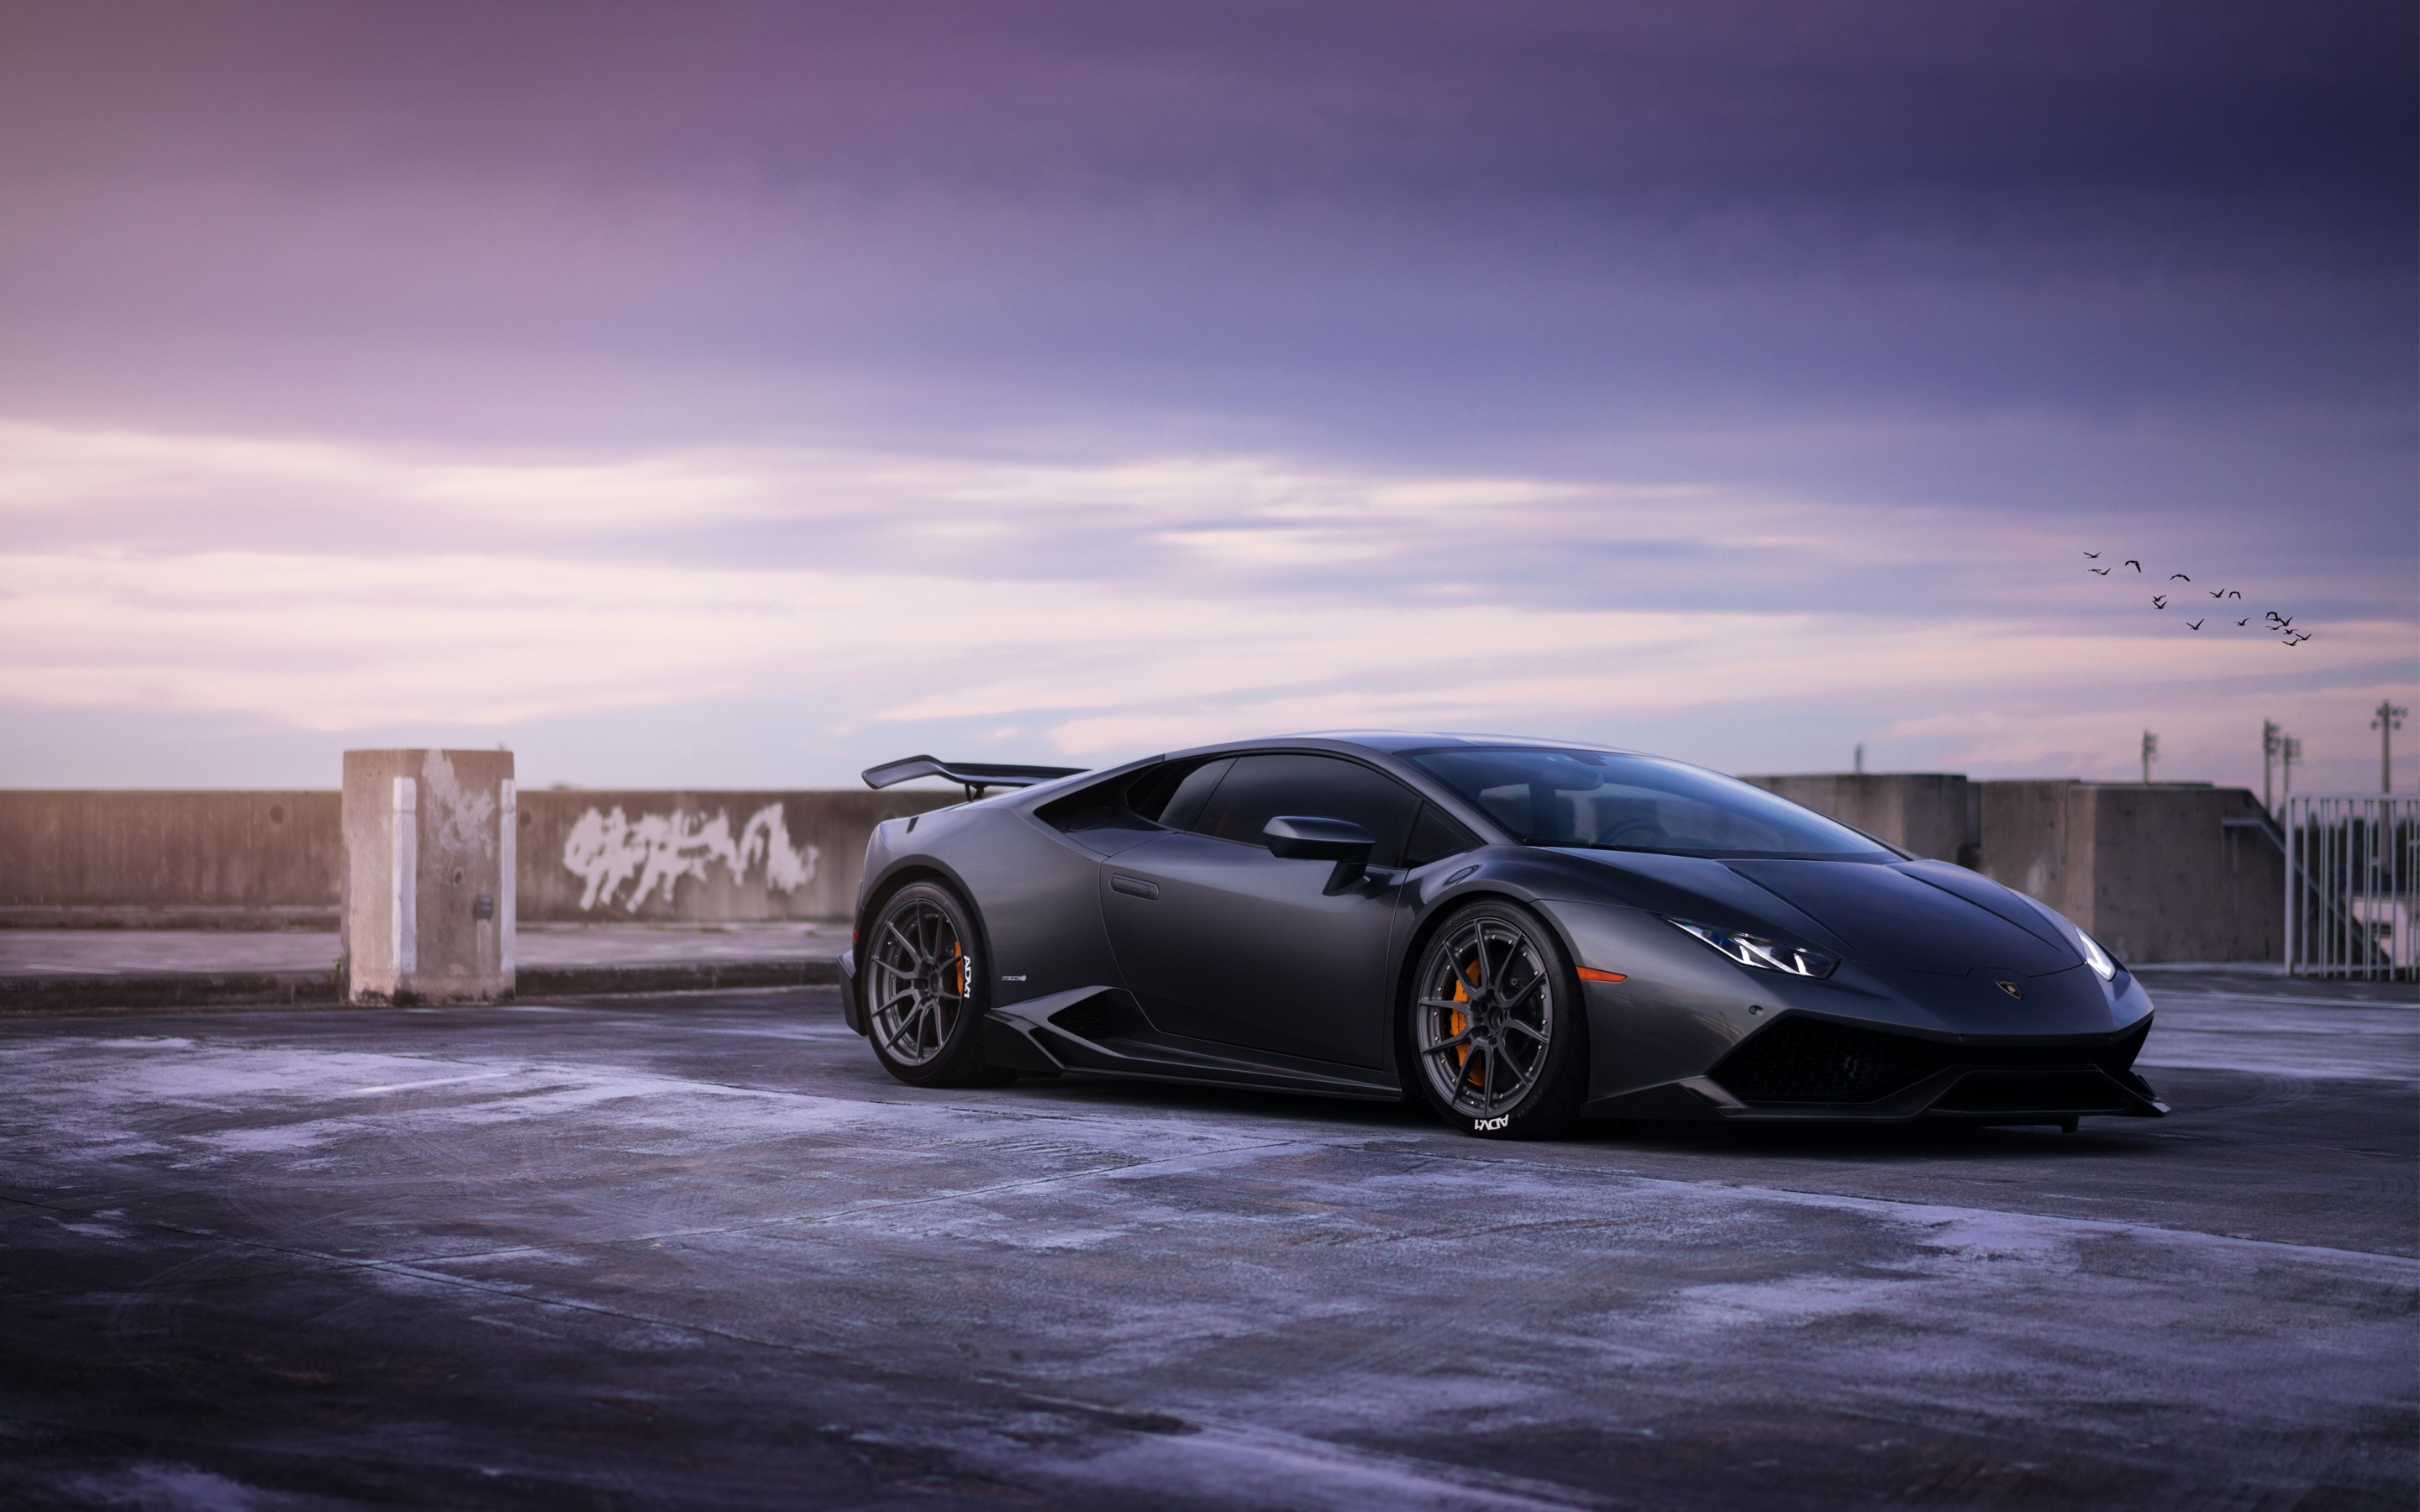 Lamborghini Huracan wallpaper ·① ① Download free cool full HD